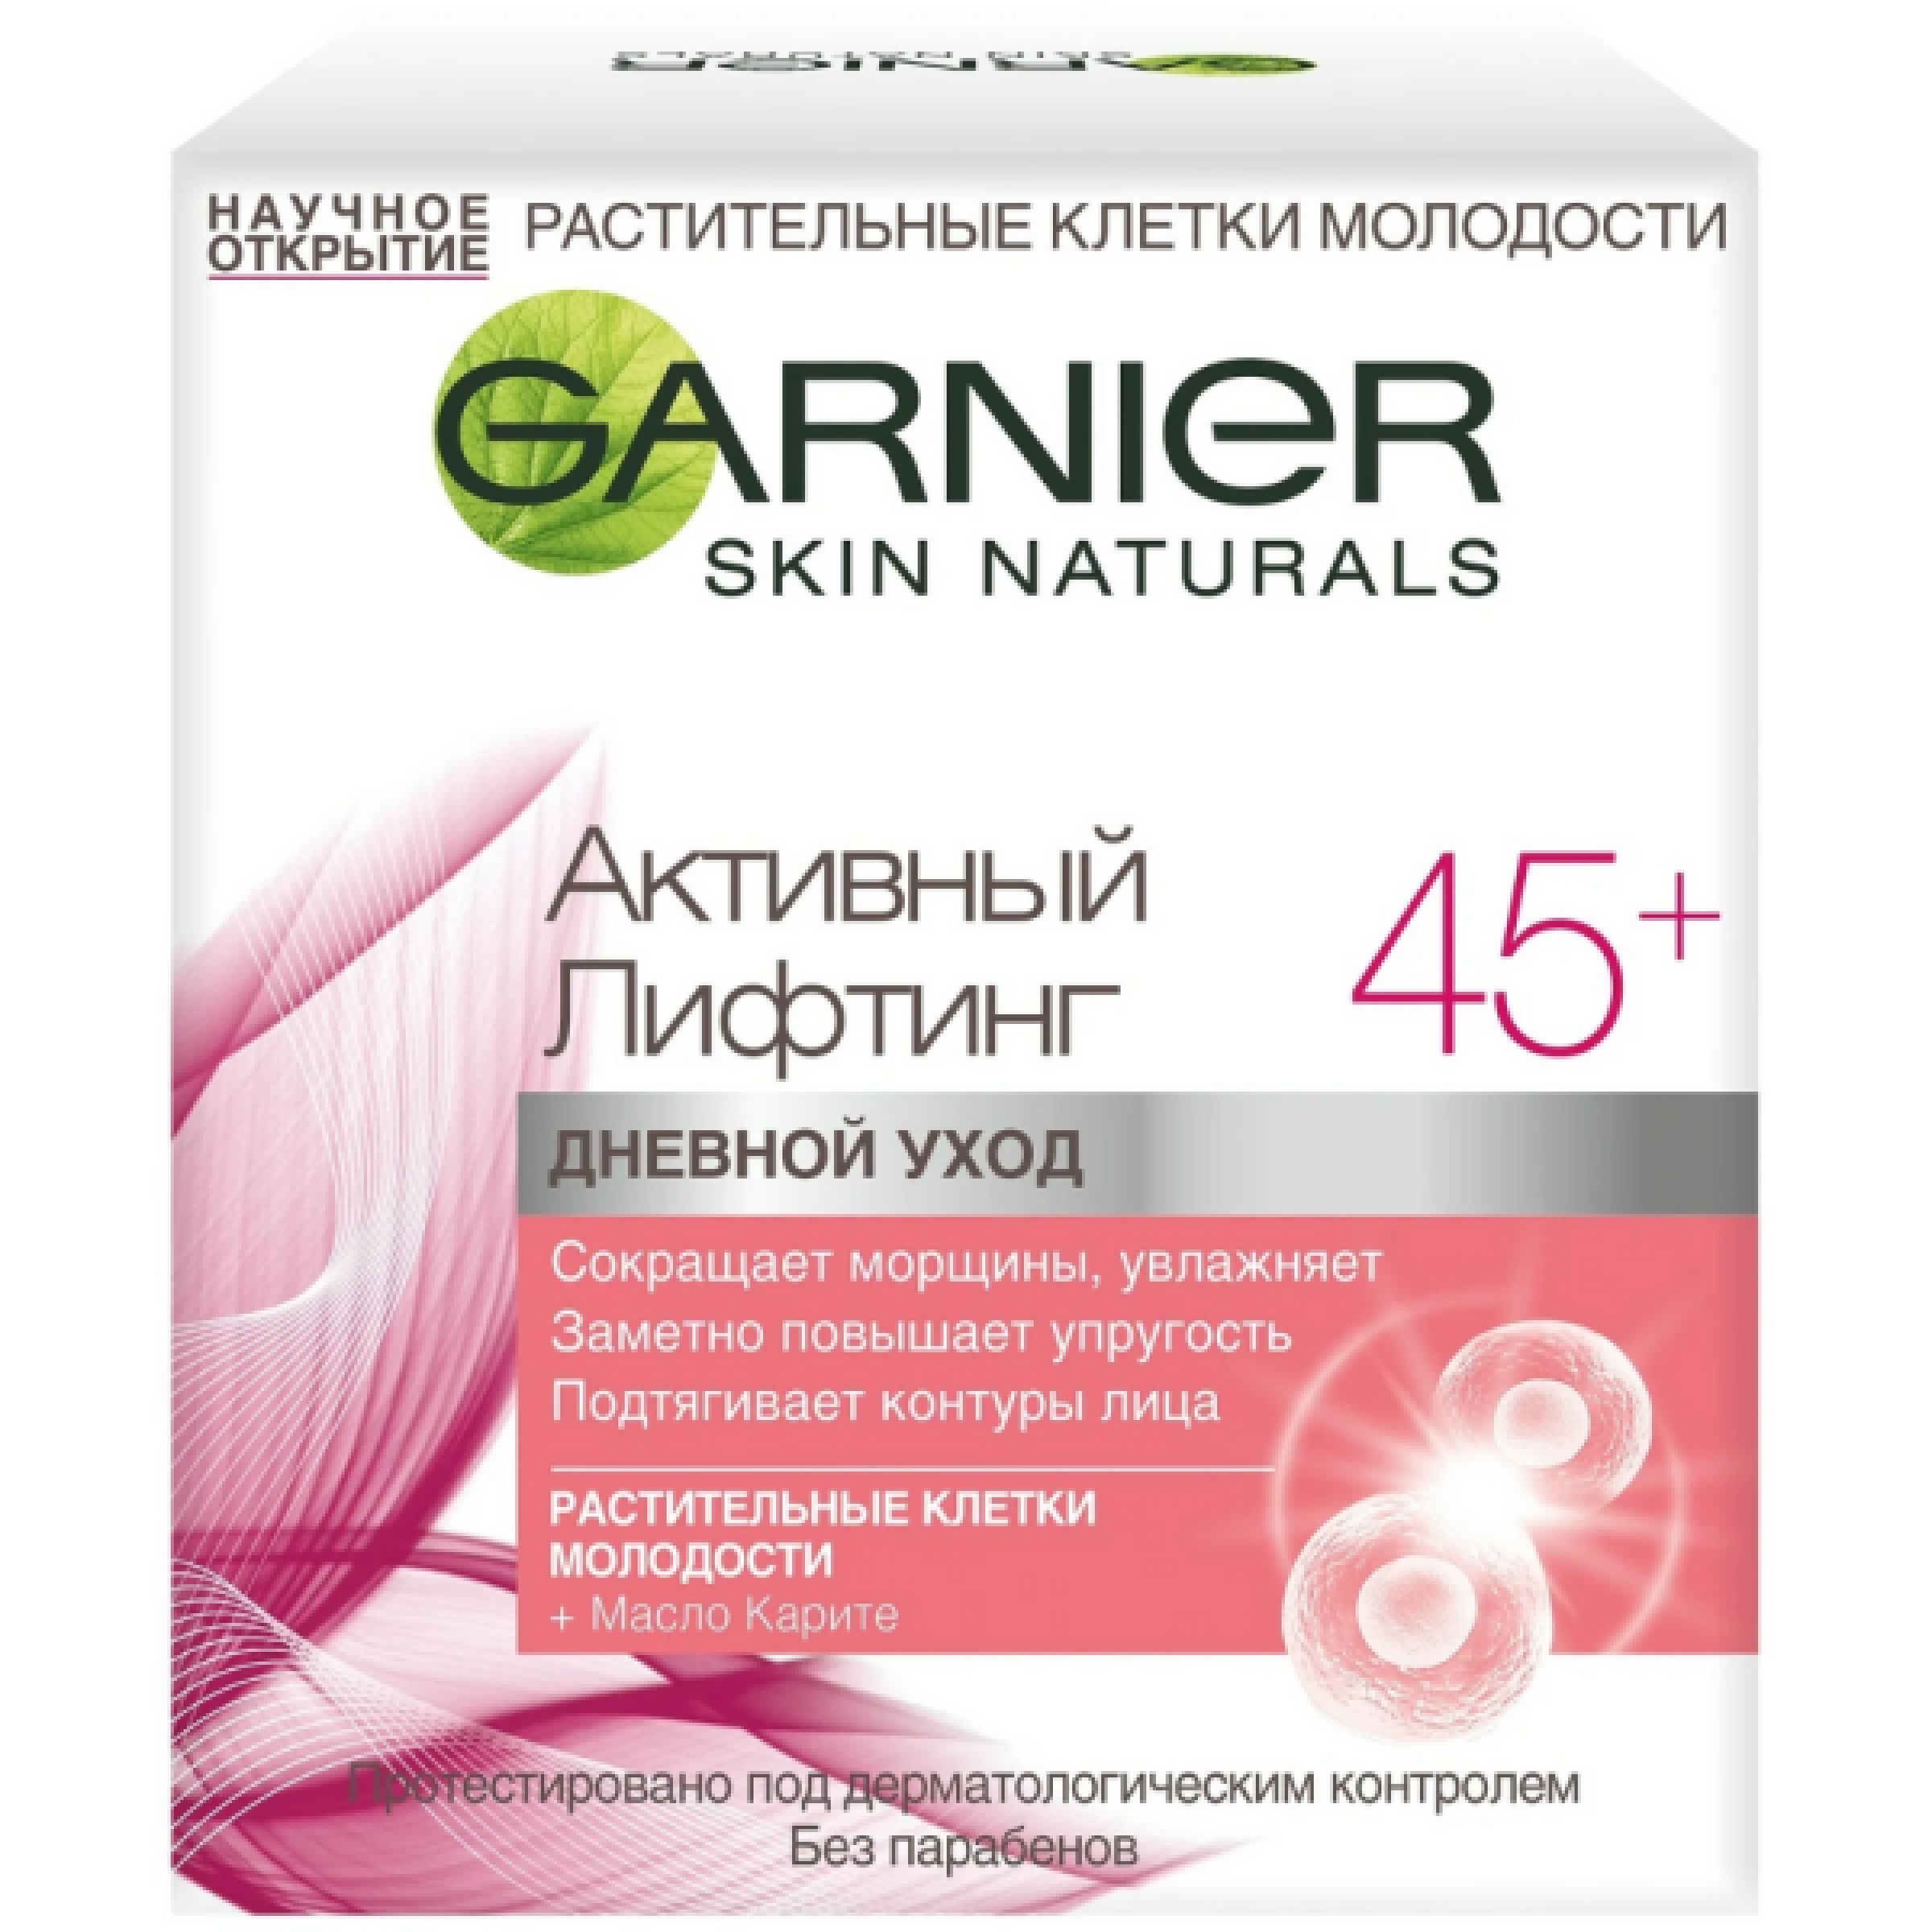 Дневной крем от морщин Garnier Skin Naturals Активный лифтинг, растительные клетки молодости + Масло облепихи 45+, 50 мл